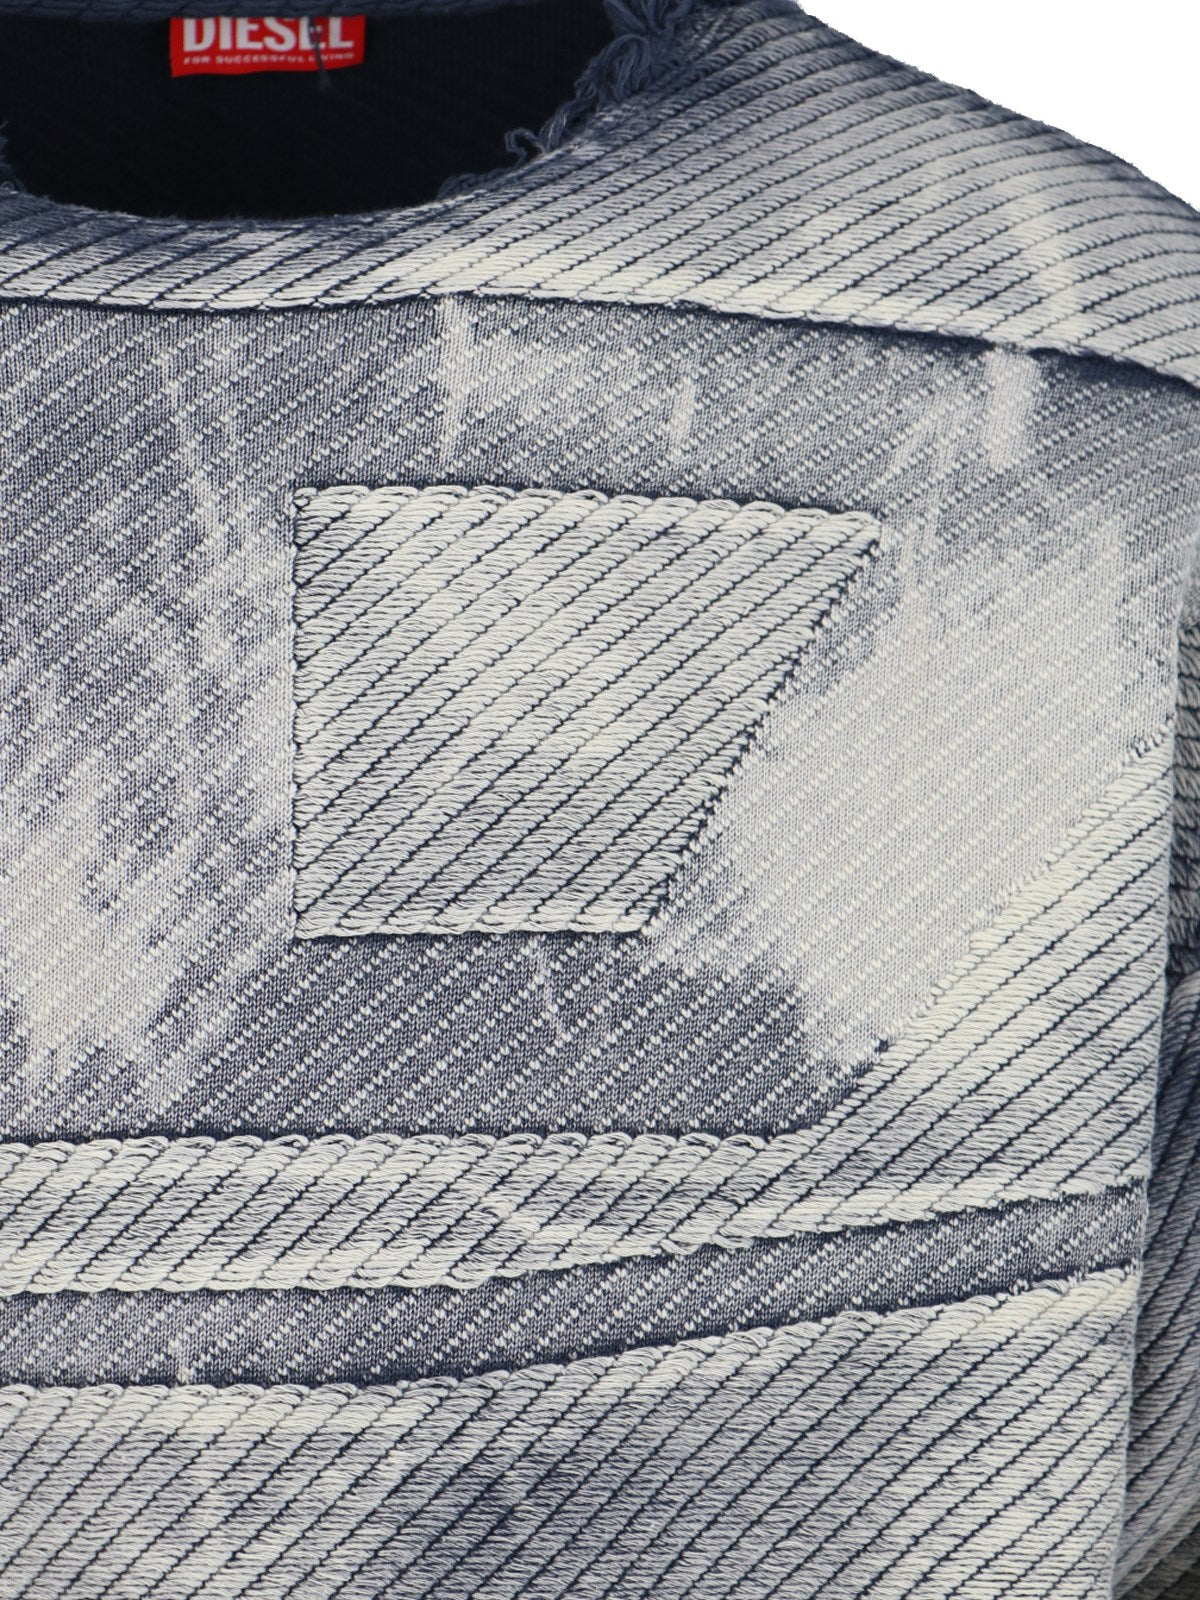 Diesel Maglione sfrangiato-maglioni-Diesel-Maglione sfrangiato Diesel, in cotone grigio, girocollo, dettagli usured, pattern effetto denim, stampa logo tono su tono fronte, finiture costine, orlo dritto.-Dresso